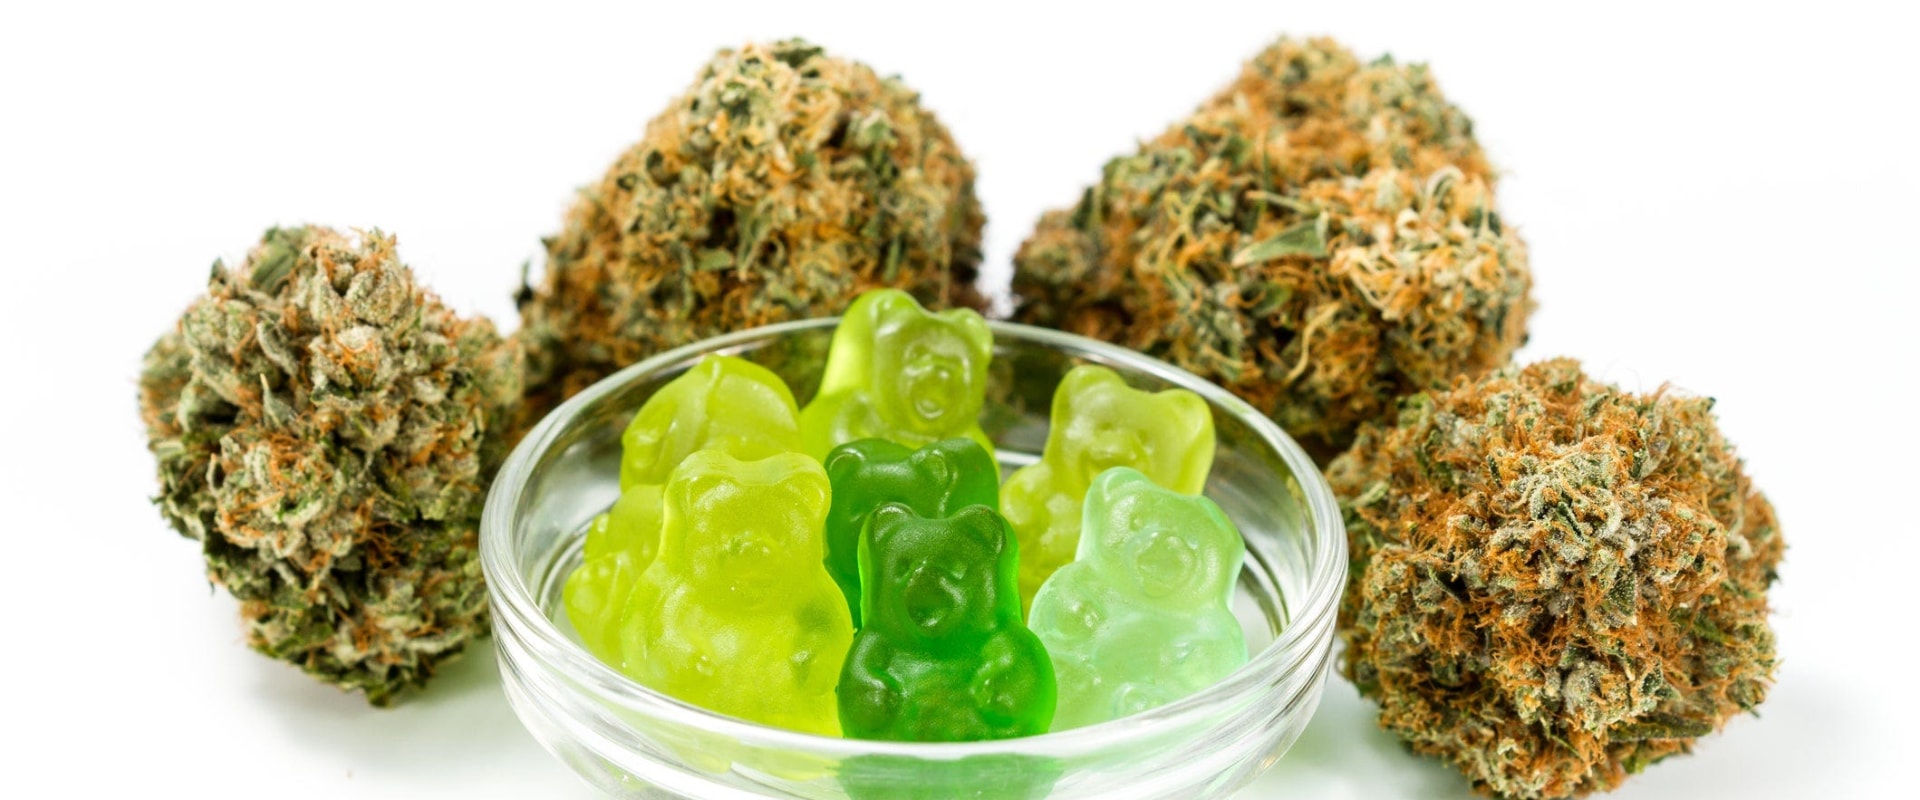 Do Cannabis Stores Sell Gummies?